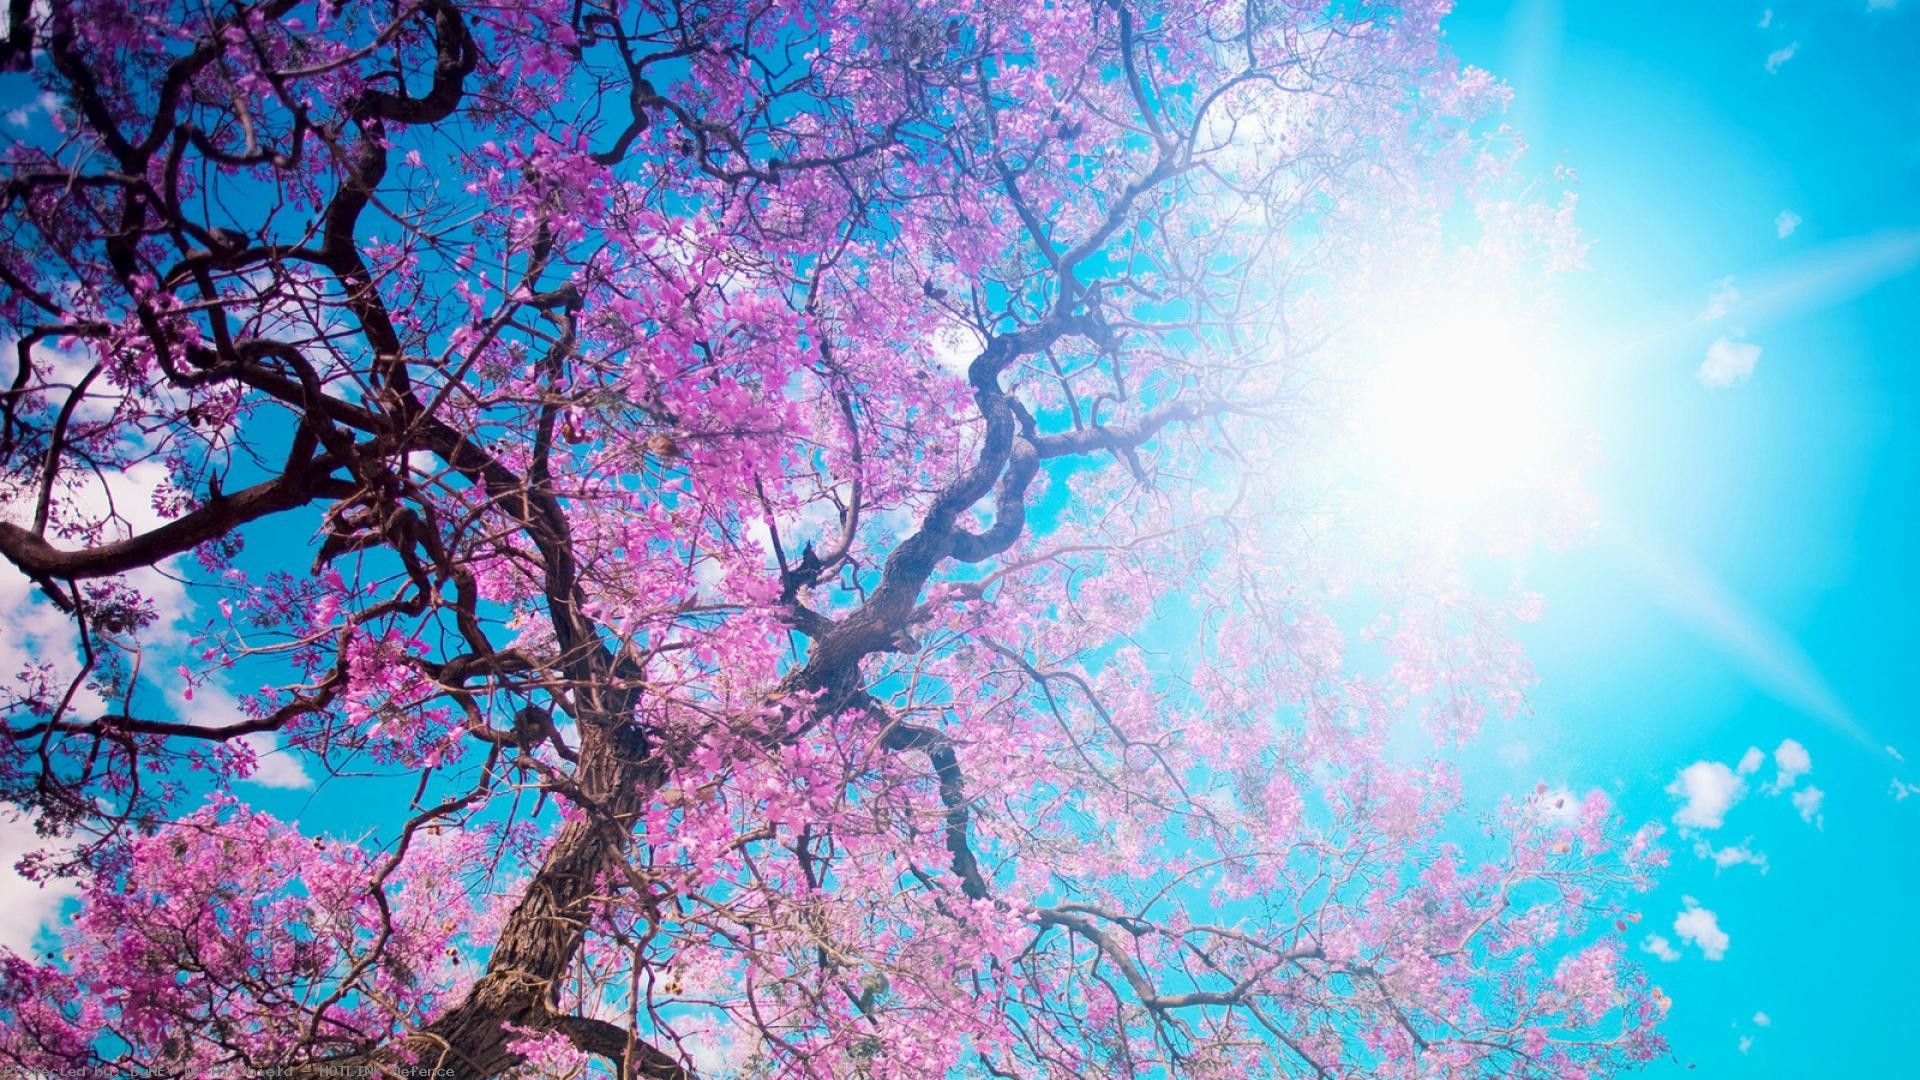 o-hanami-blossom-festival-and-to-enjoy-the-